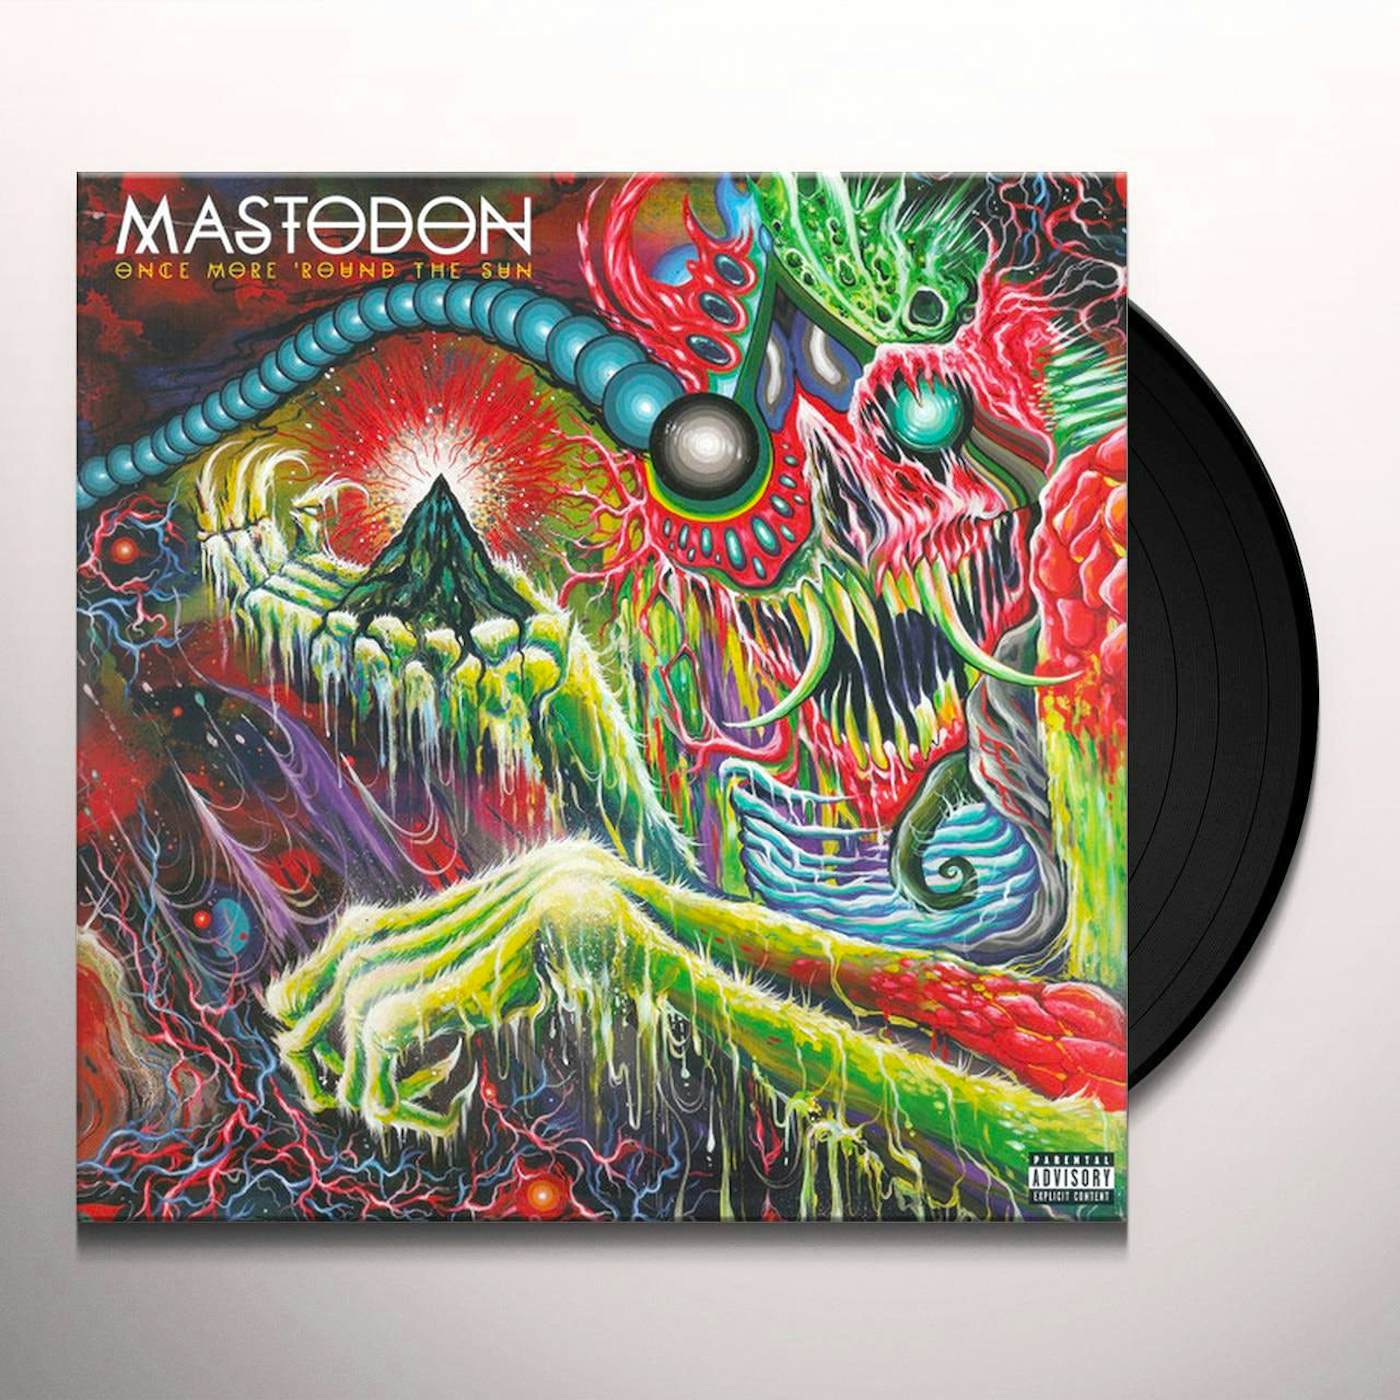 Mastodon "Once More Round the Sun" 2x12" (Vinyl)